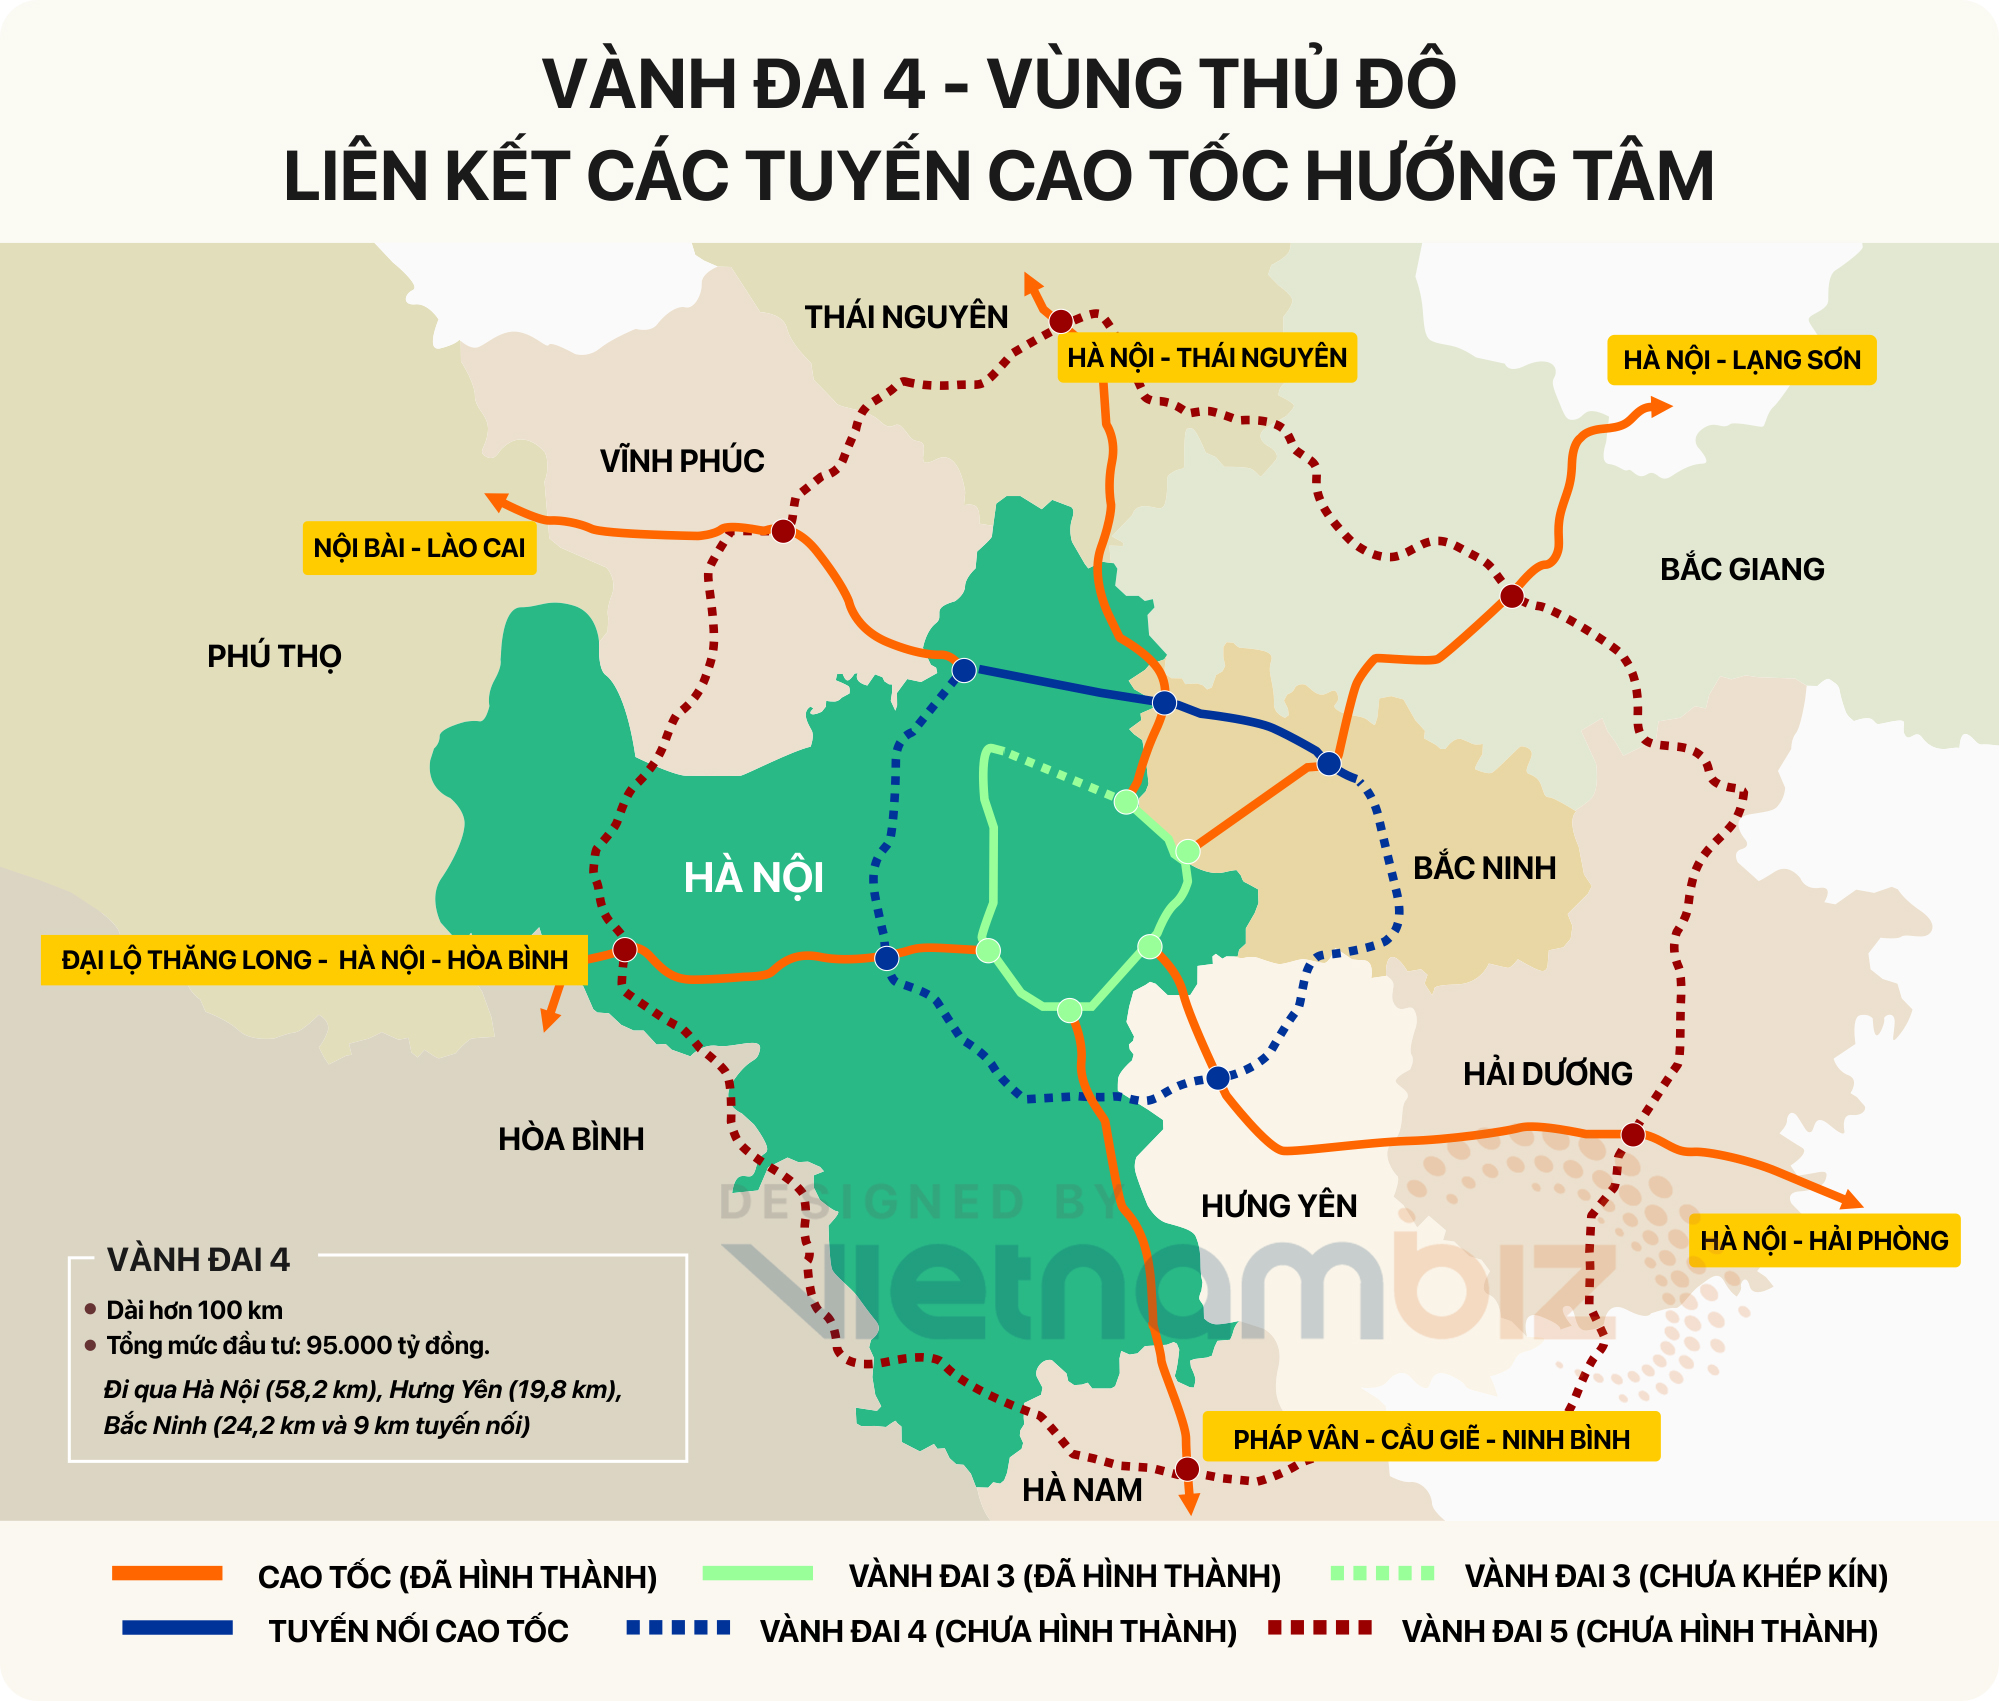 Nhà đầu tư dự án quy mô sẽ không thể bỏ qua Bắc Ninh - một trong những địa phương có tiềm năng phát triển kinh tế và đầu tư bất động sản cực kỳ hấp dẫn tại Việt Nam. Với nhiều dự án quy mô được triển khai và địa thế đất đai đẹp, Bắc Ninh hứa hẹn là nơi mang lại lợi nhuận cao và tiềm năng đầu tư lớn cho các nhà đầu tư.